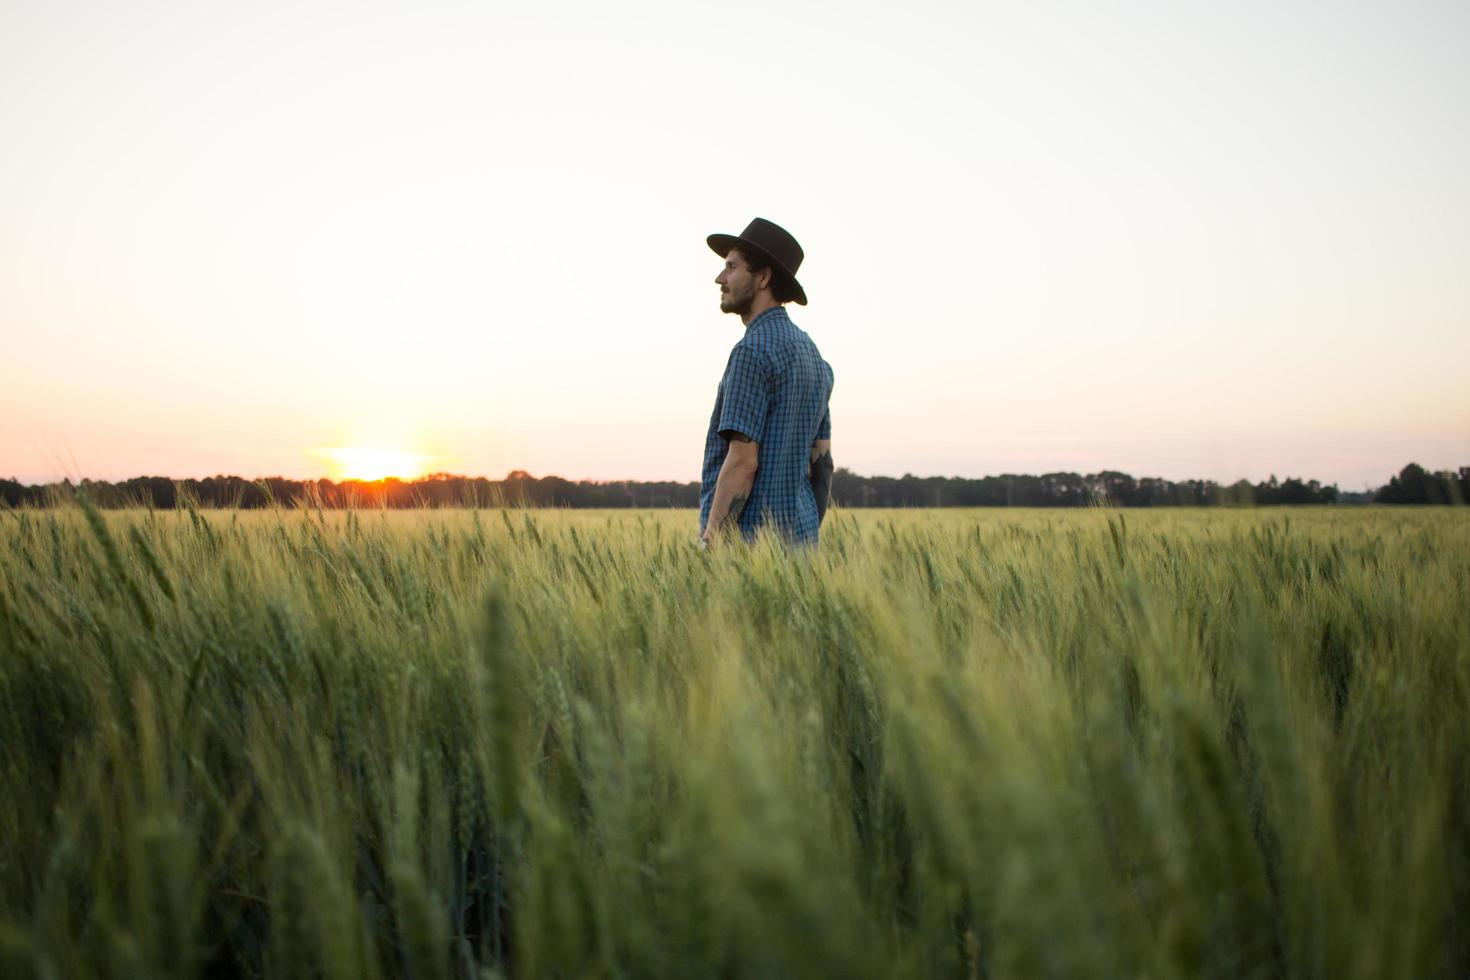 jovem agricultor masculino sozinho no campo de trigo durante o pôr do sol foto